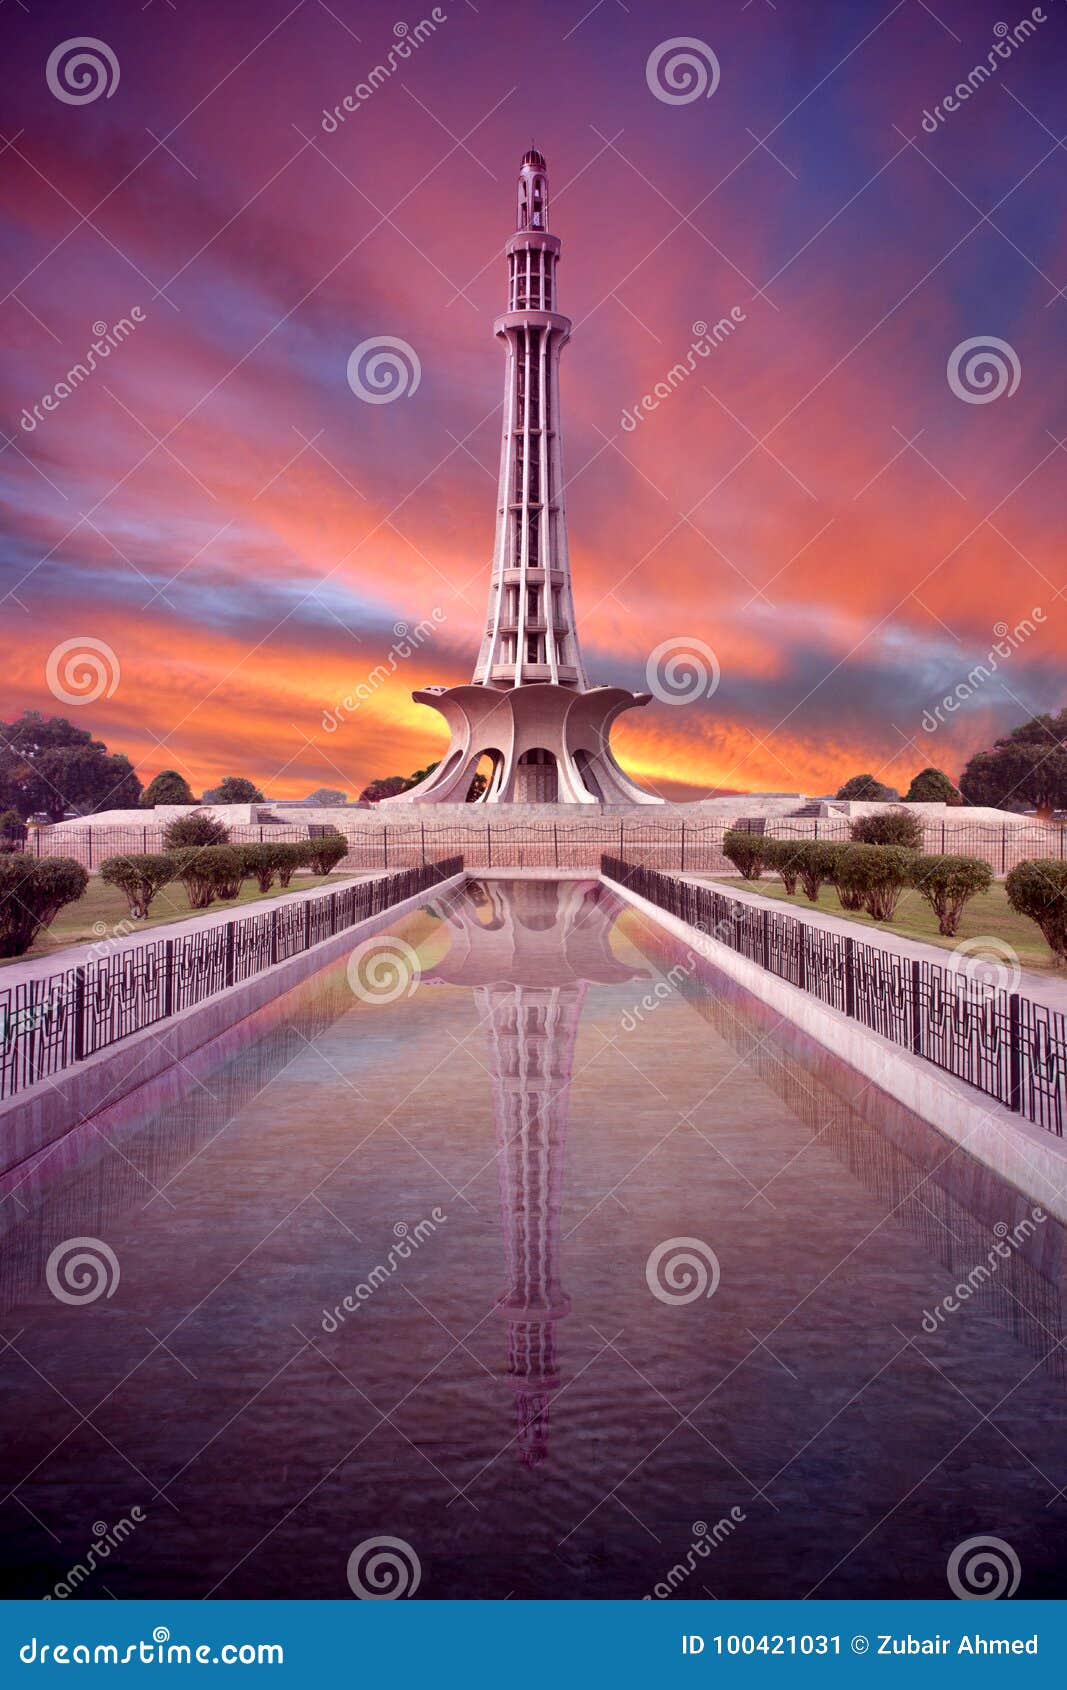 minar e pakistan day